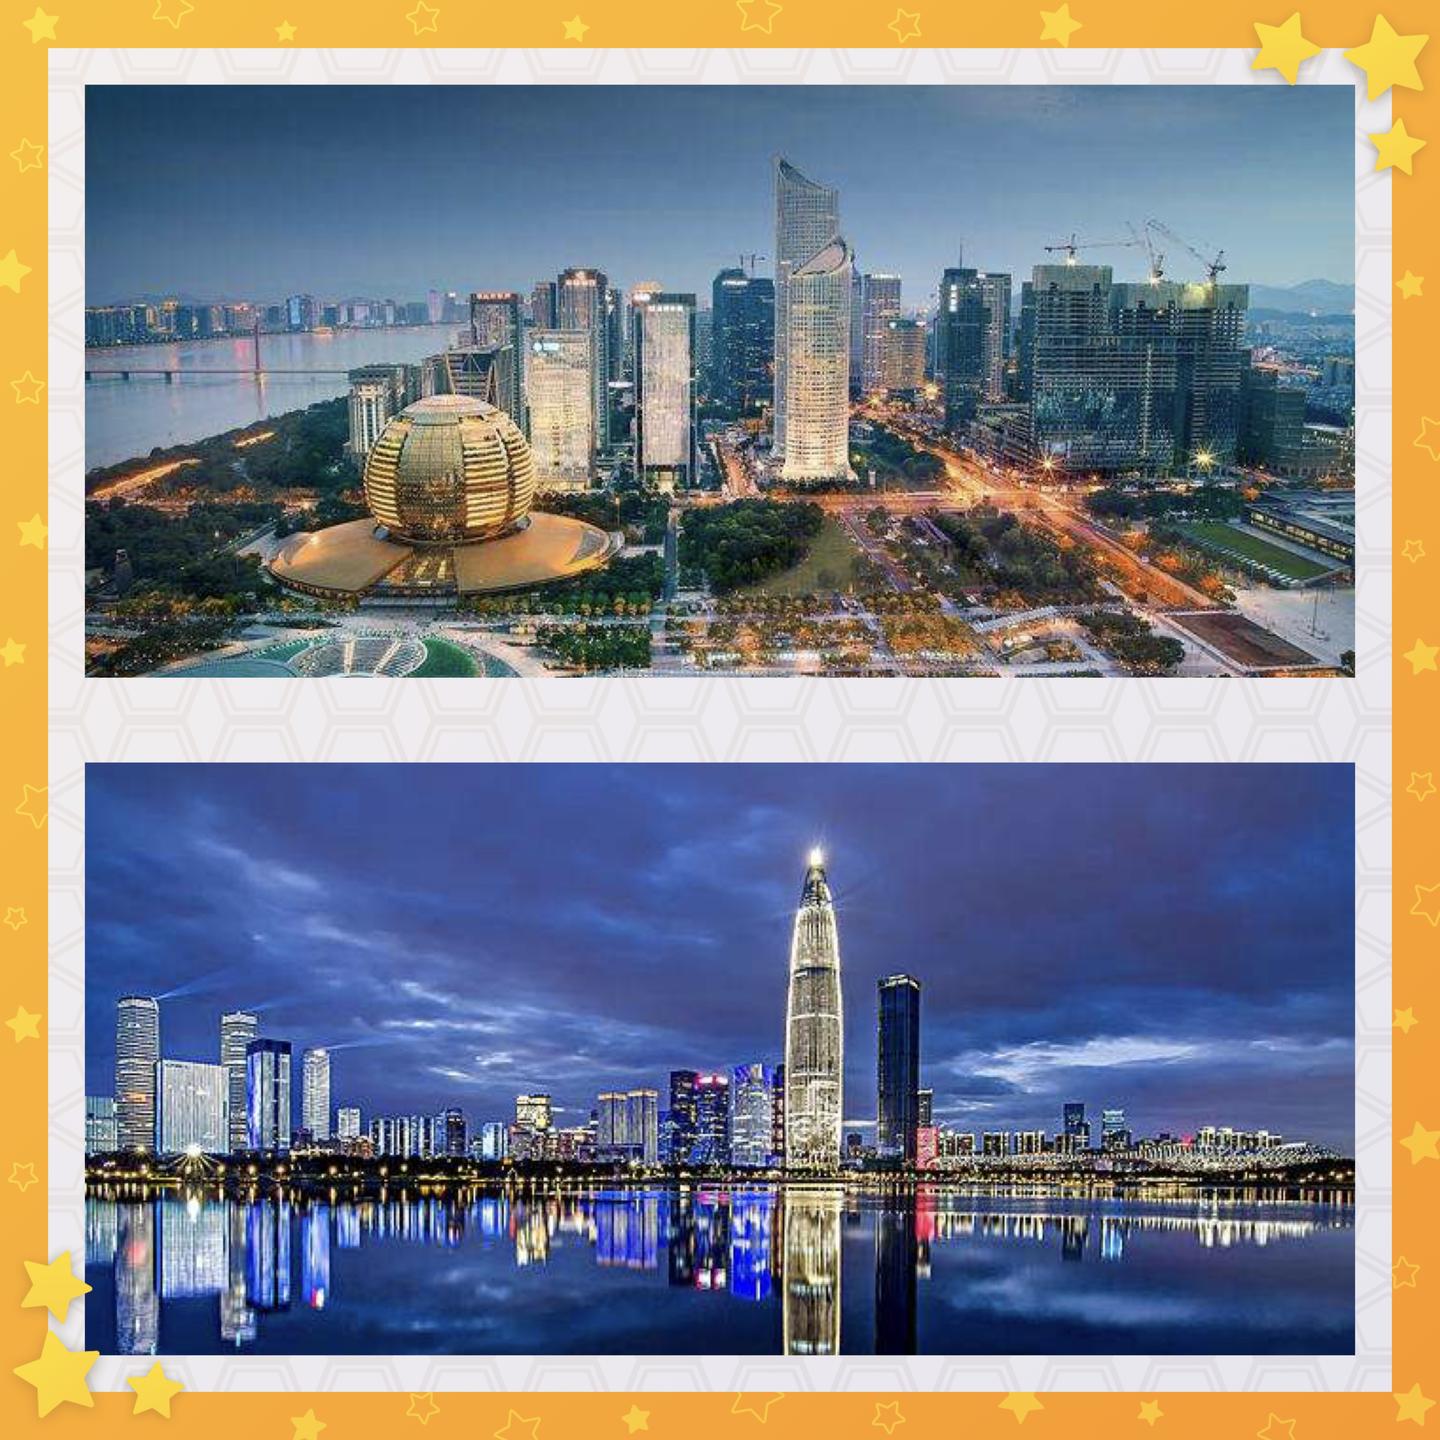 深圳和杭州的城市对比之我见